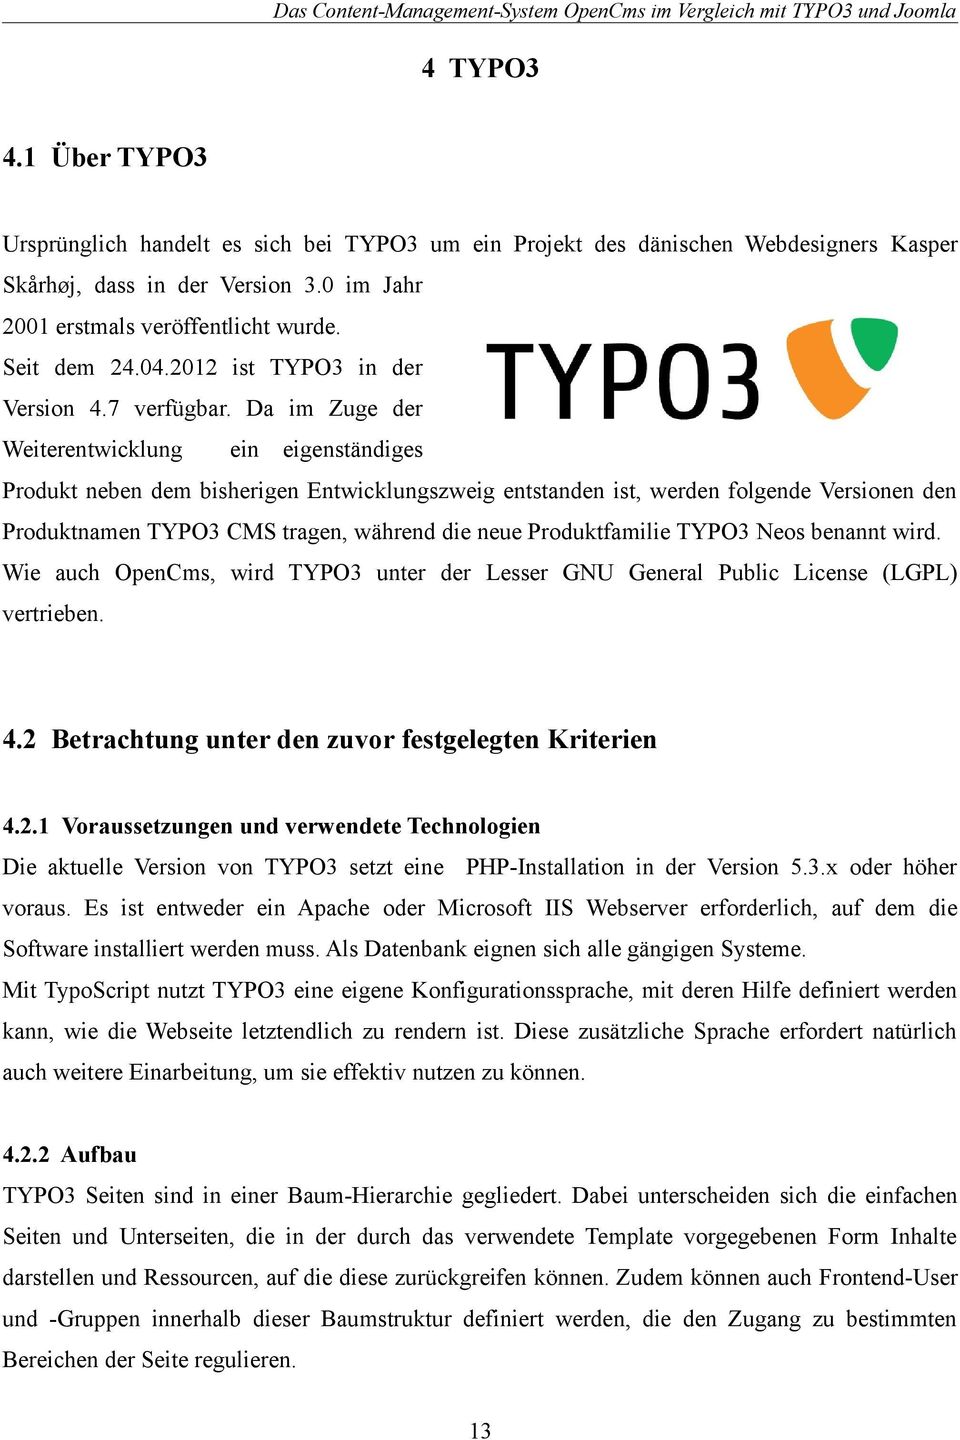 Da im Zuge der Weiterentwicklung ein eigenständiges Produkt neben dem bisherigen Entwicklungszweig entstanden ist, werden folgende Versionen den Produktnamen TYPO3 CMS tragen, während die neue